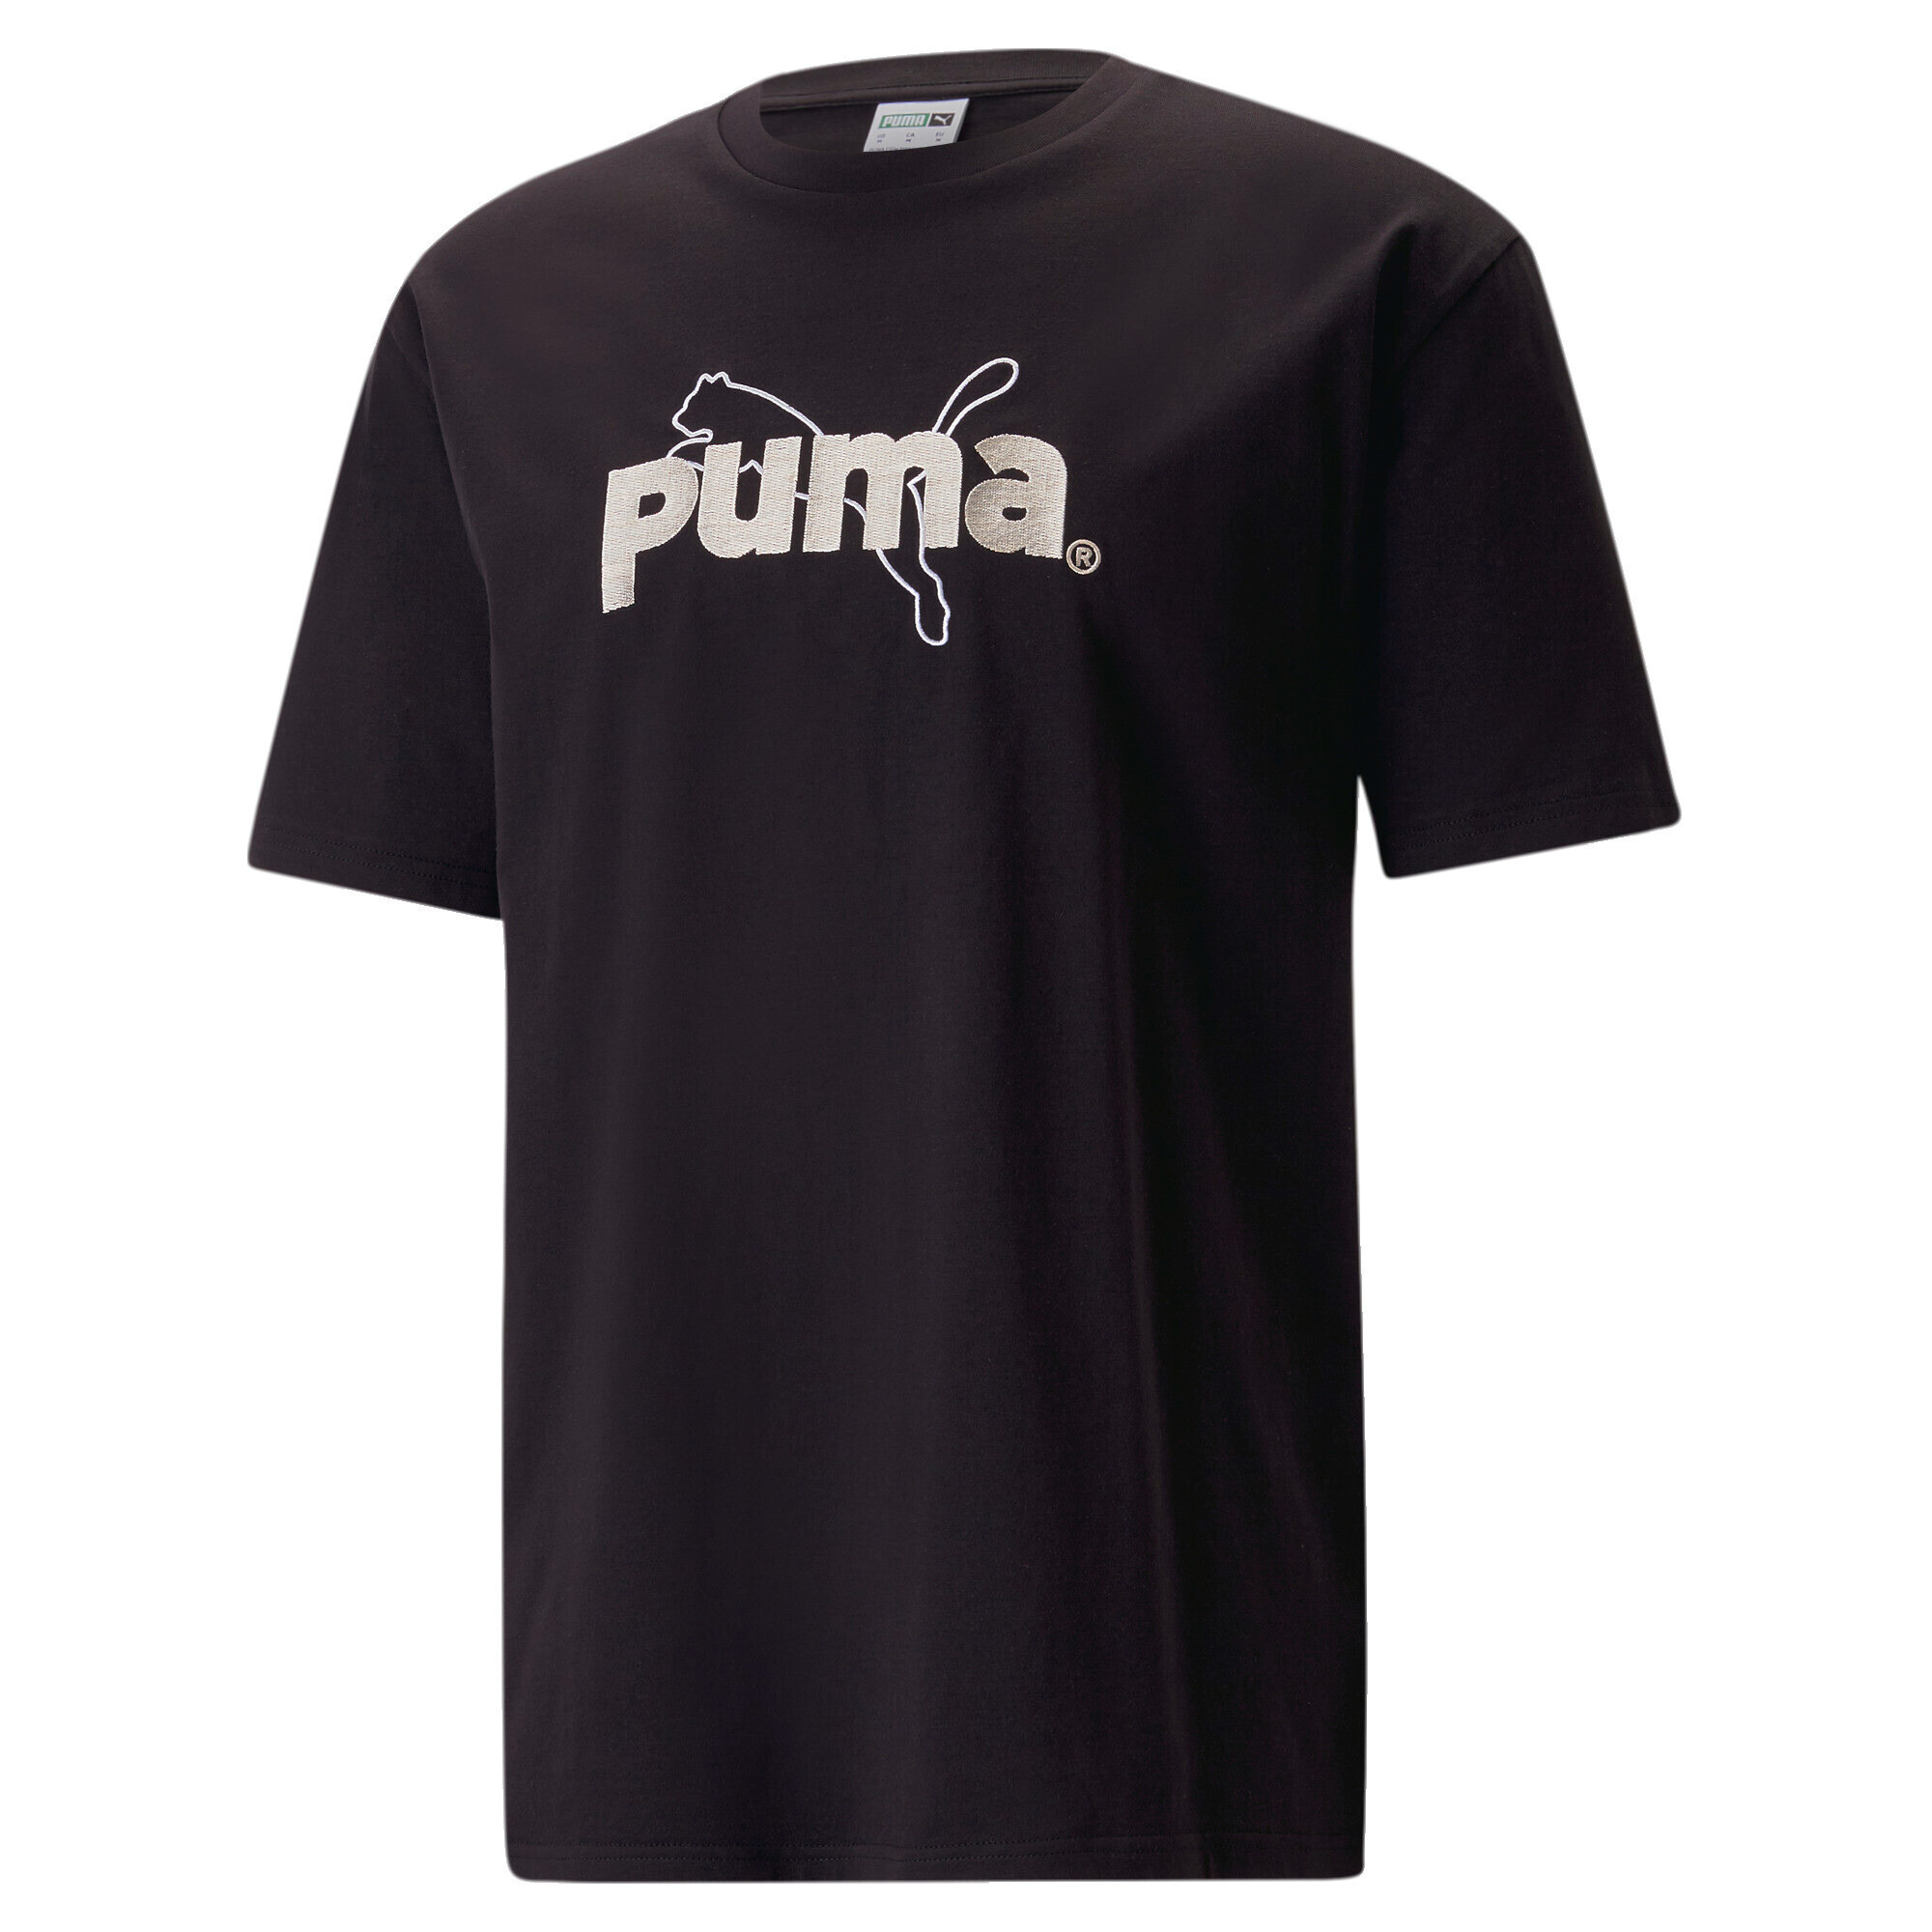 ＜プーマ公式通販＞ プーマ メンズ アップタウン グラフィック Tシャツ メンズ PUMA White ｜PUMA.com